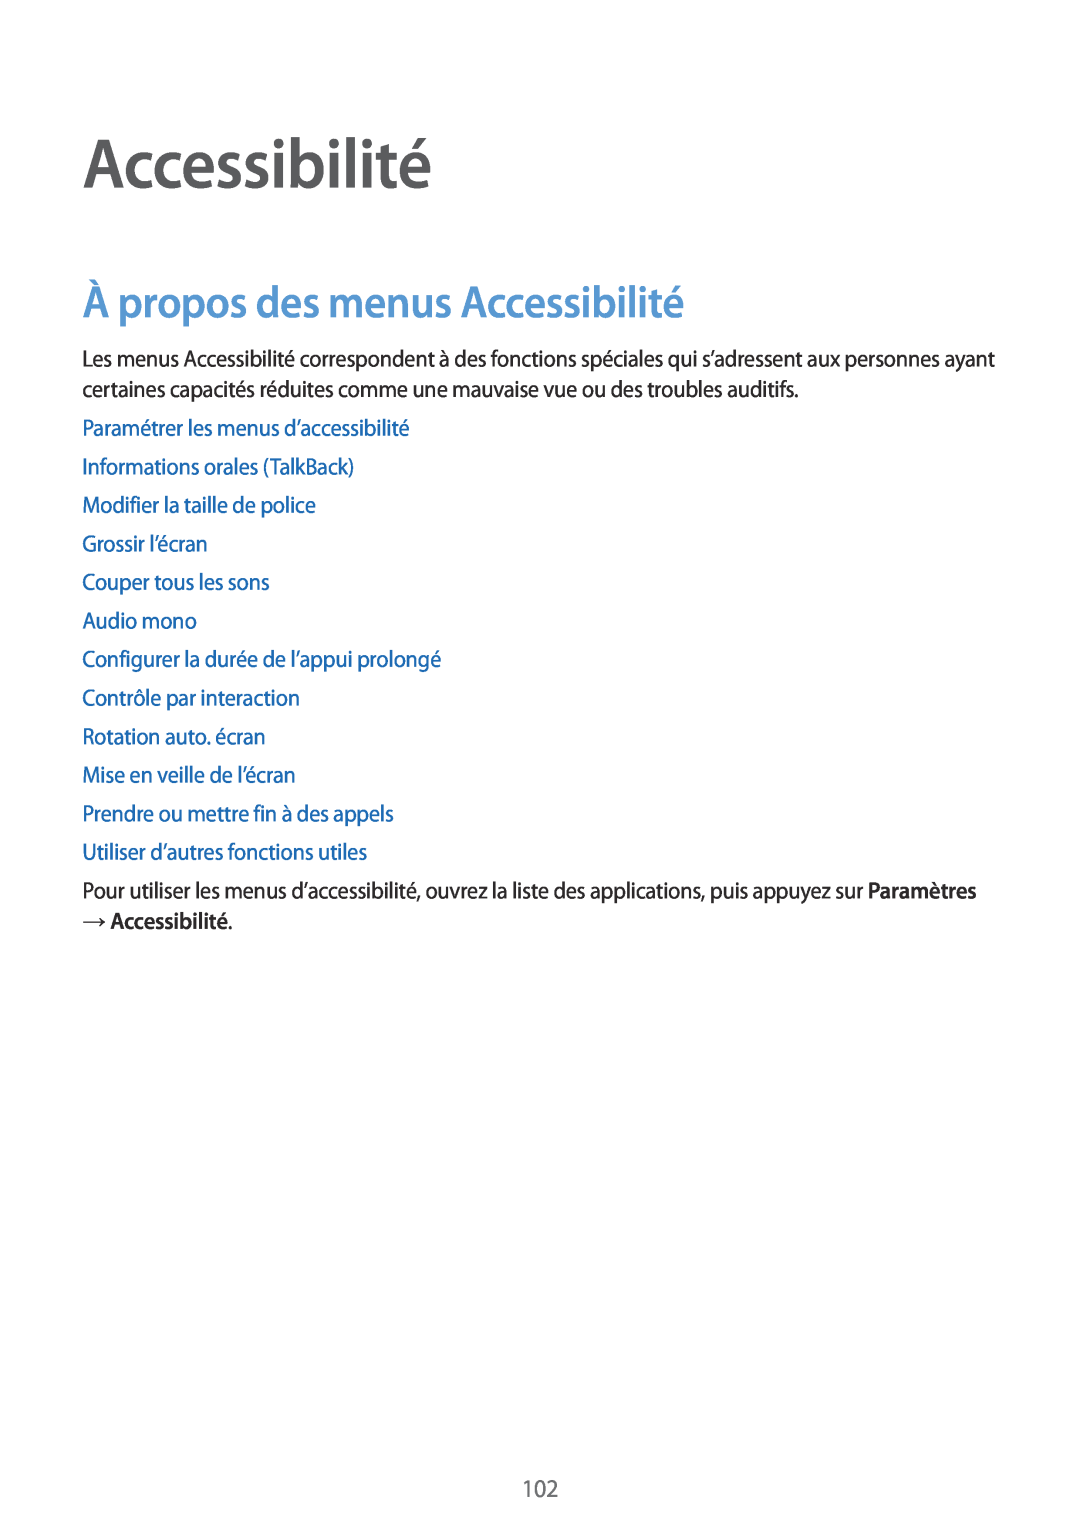 Samsung SM-G130HZWACOR, SM-G130HZANFTM, SM-G130HZWNXEF, SM-G130HZAACOR À propos des menus Accessibilité, → Accessibilité 